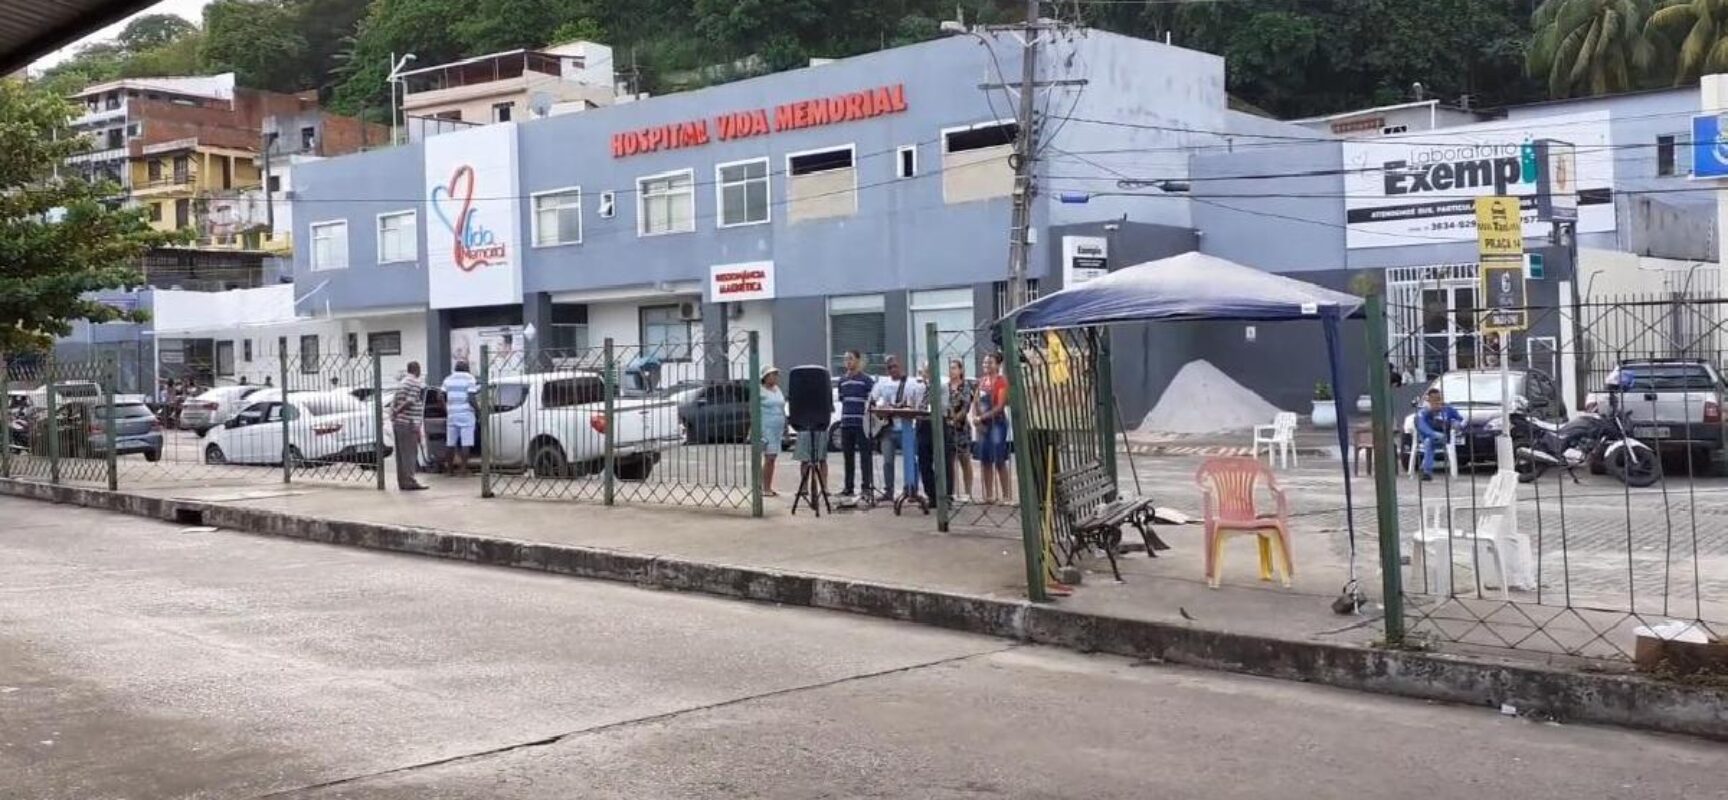 Hospital Vida Memorial aguarda repasse do Estado para regularizar atendimento pediátrico em Ilhéus